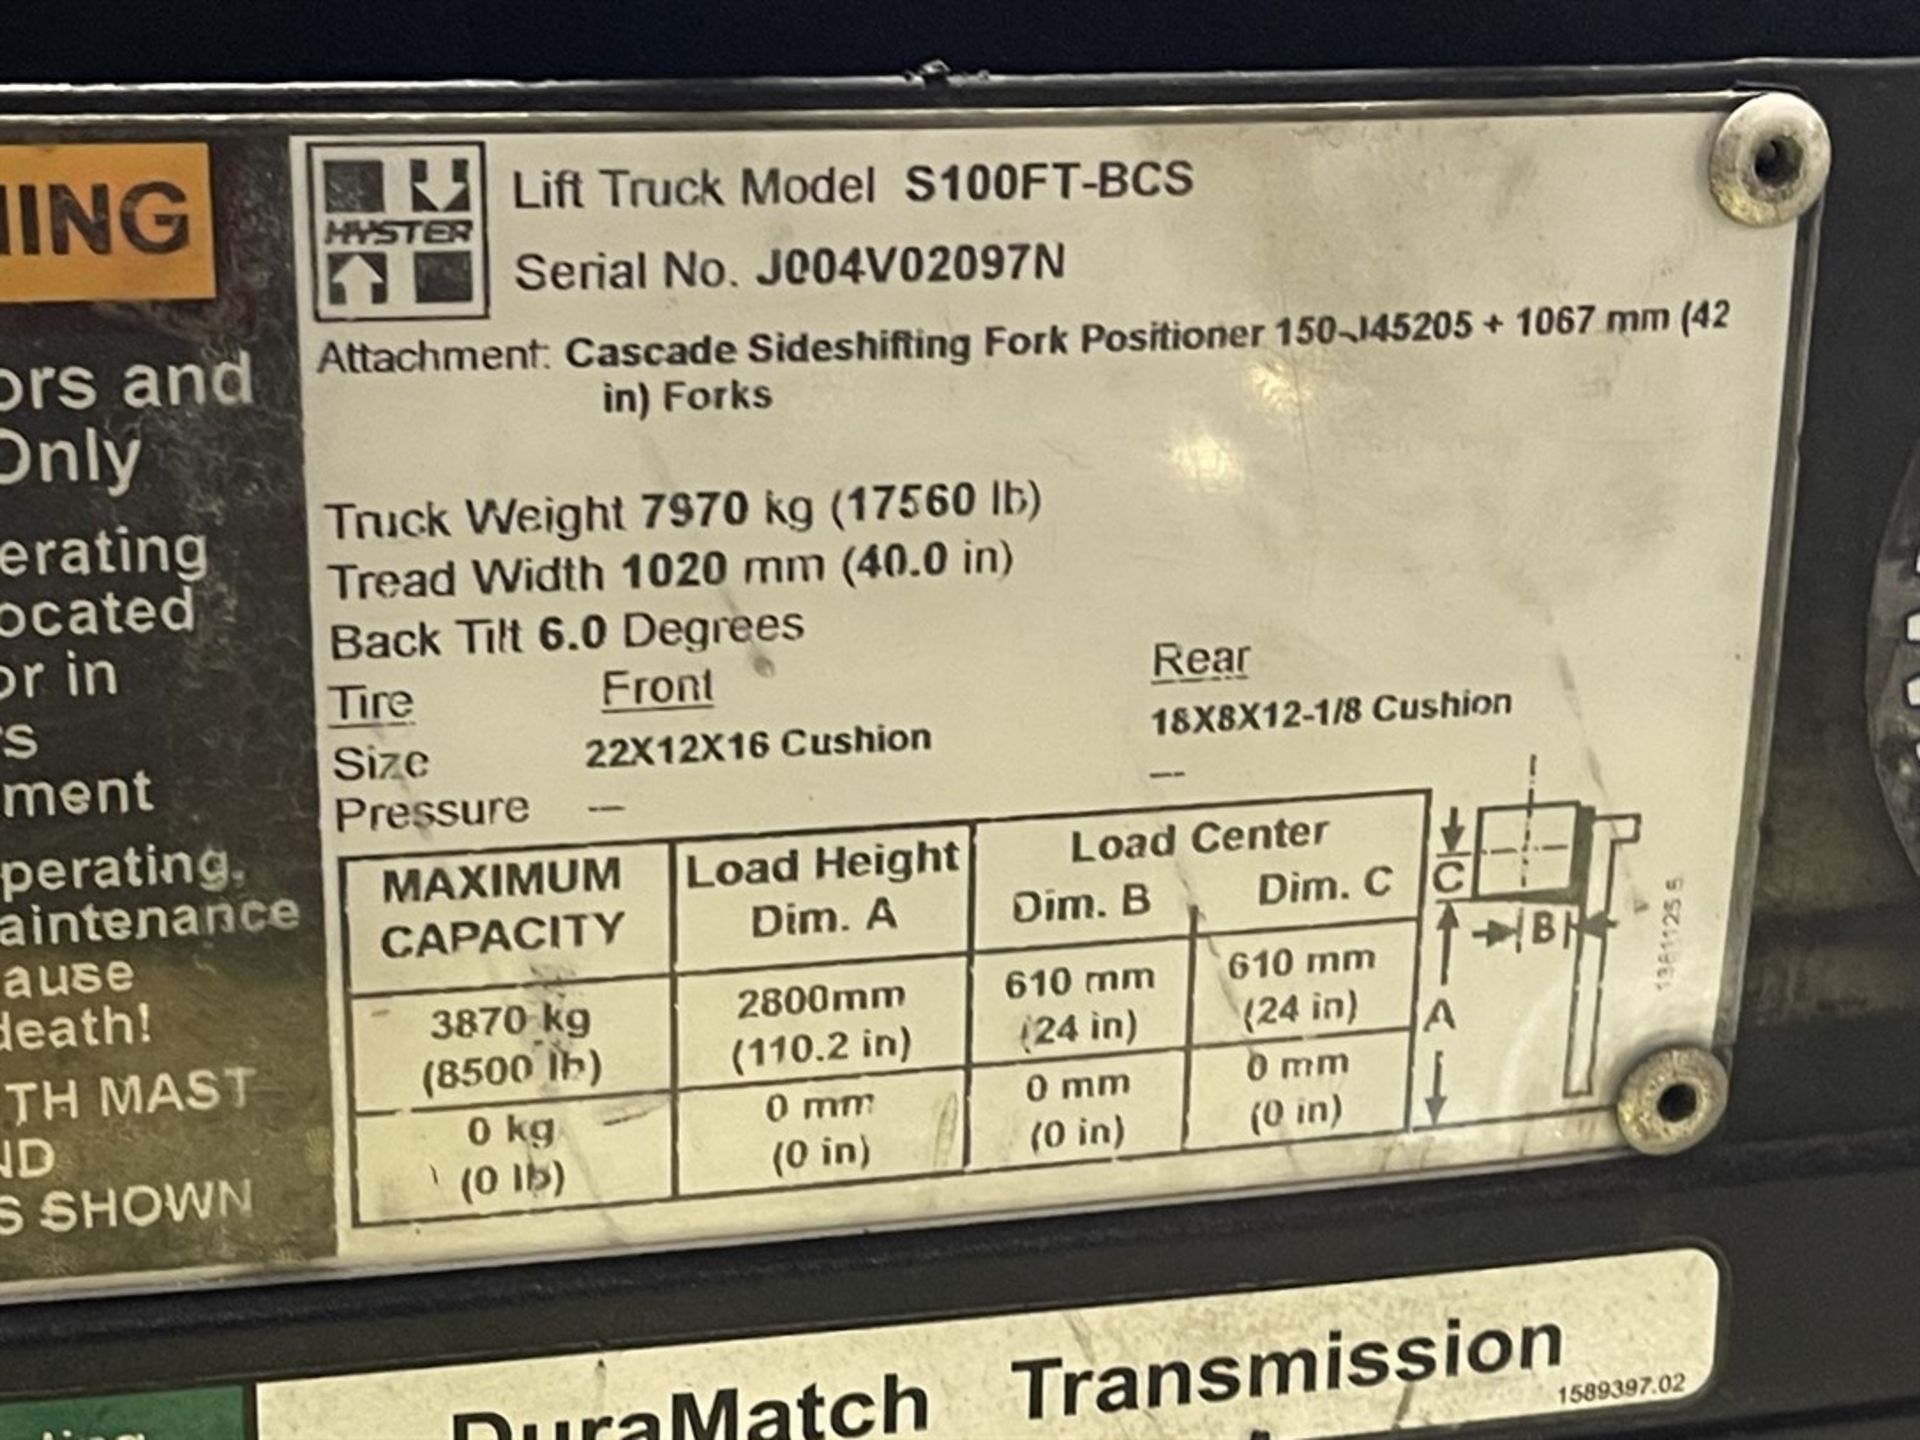 2015 HYSTER S100FTBCS/150J LP Forklift, s/n J004V02097N, 10,000 Lb. Capacity, 2-Stage Mast, - Image 9 of 10